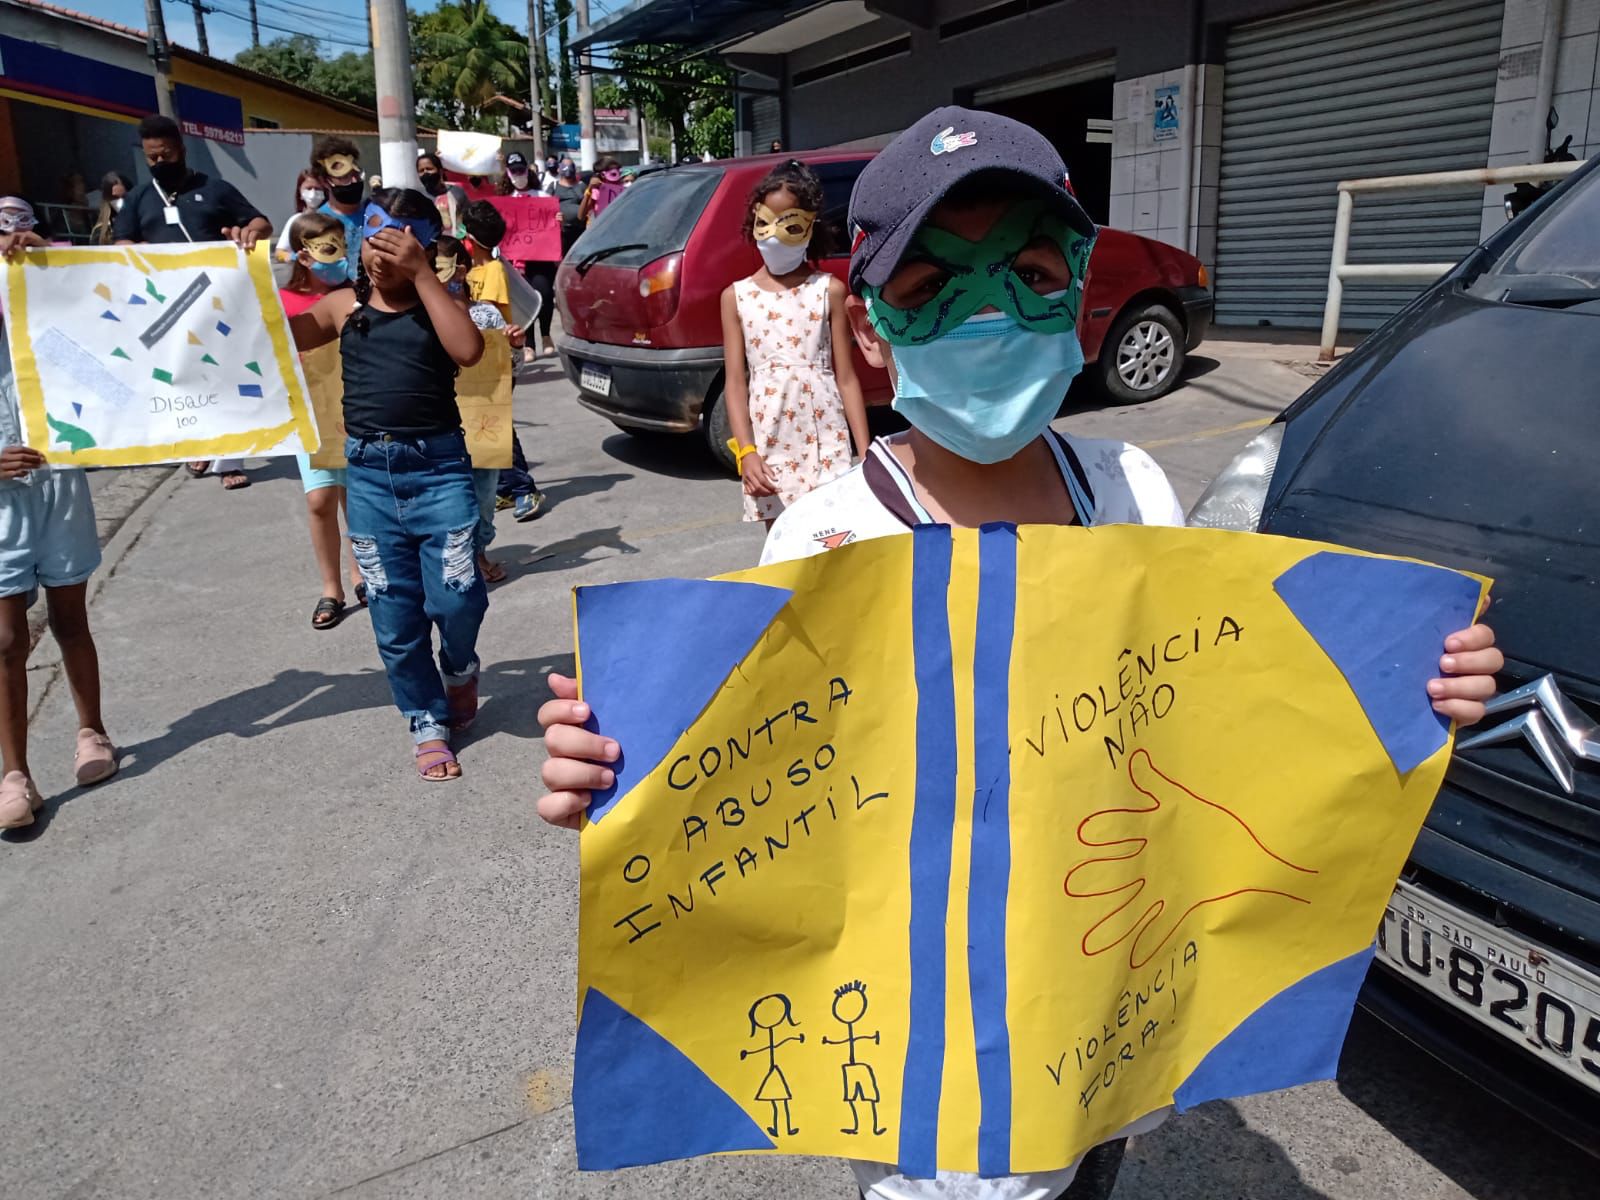 Em uma calçada com dois carros estacionados, crianças com máscaras de carnaval seguram cartazes contra o abuso e a exploração sexual infantil.